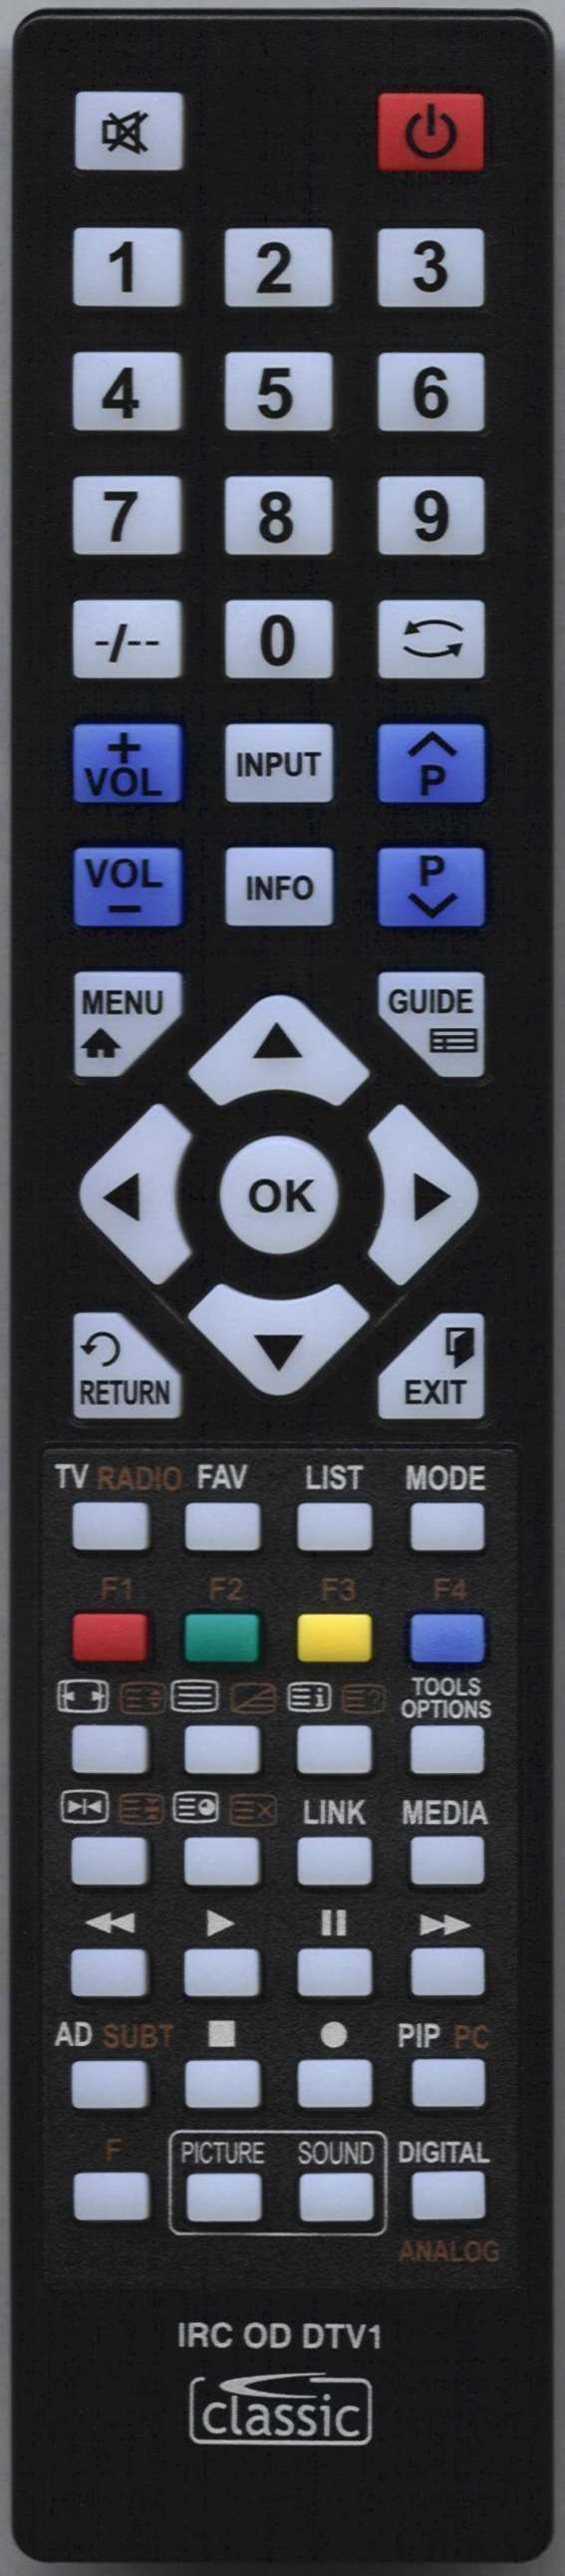 LUXOR LUX0155009/01 Remote Control Alternative